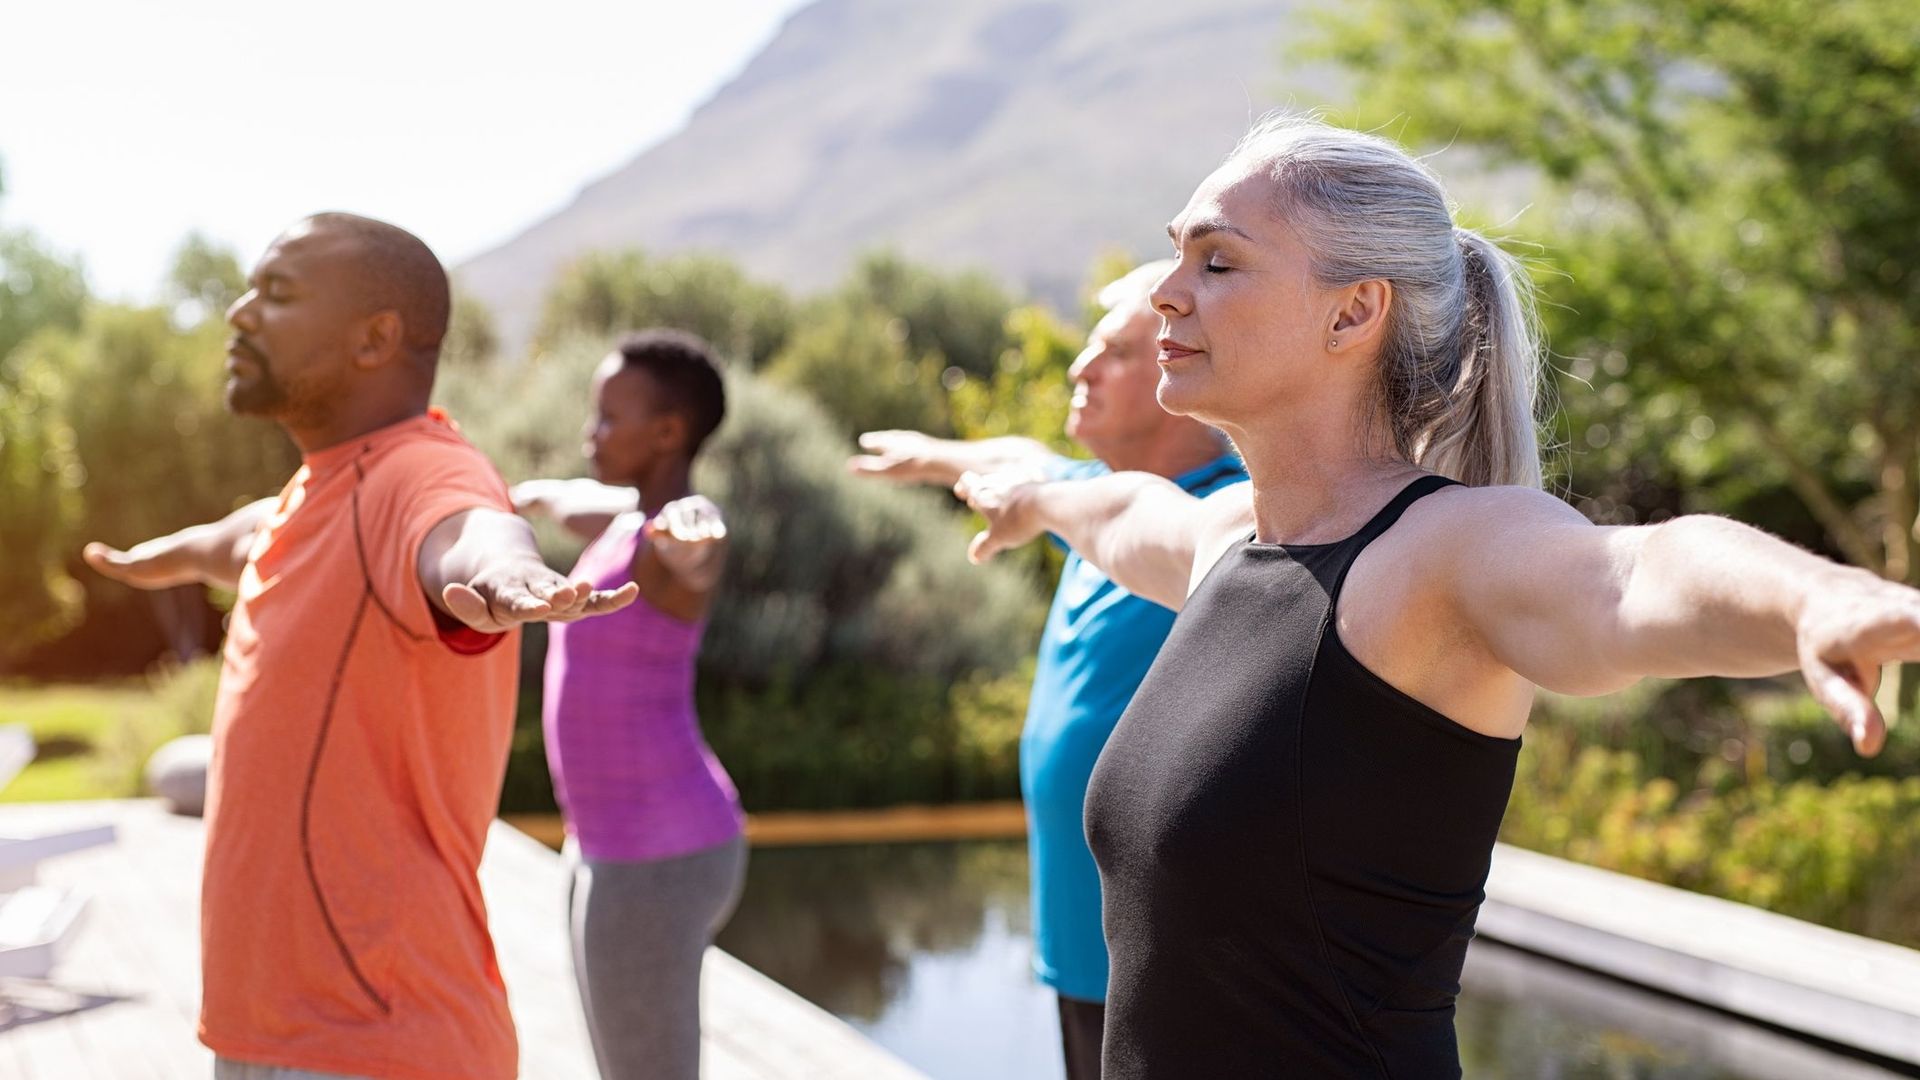 Rester active pendant la ménopause ralentirait la baisse de masse musculaire.